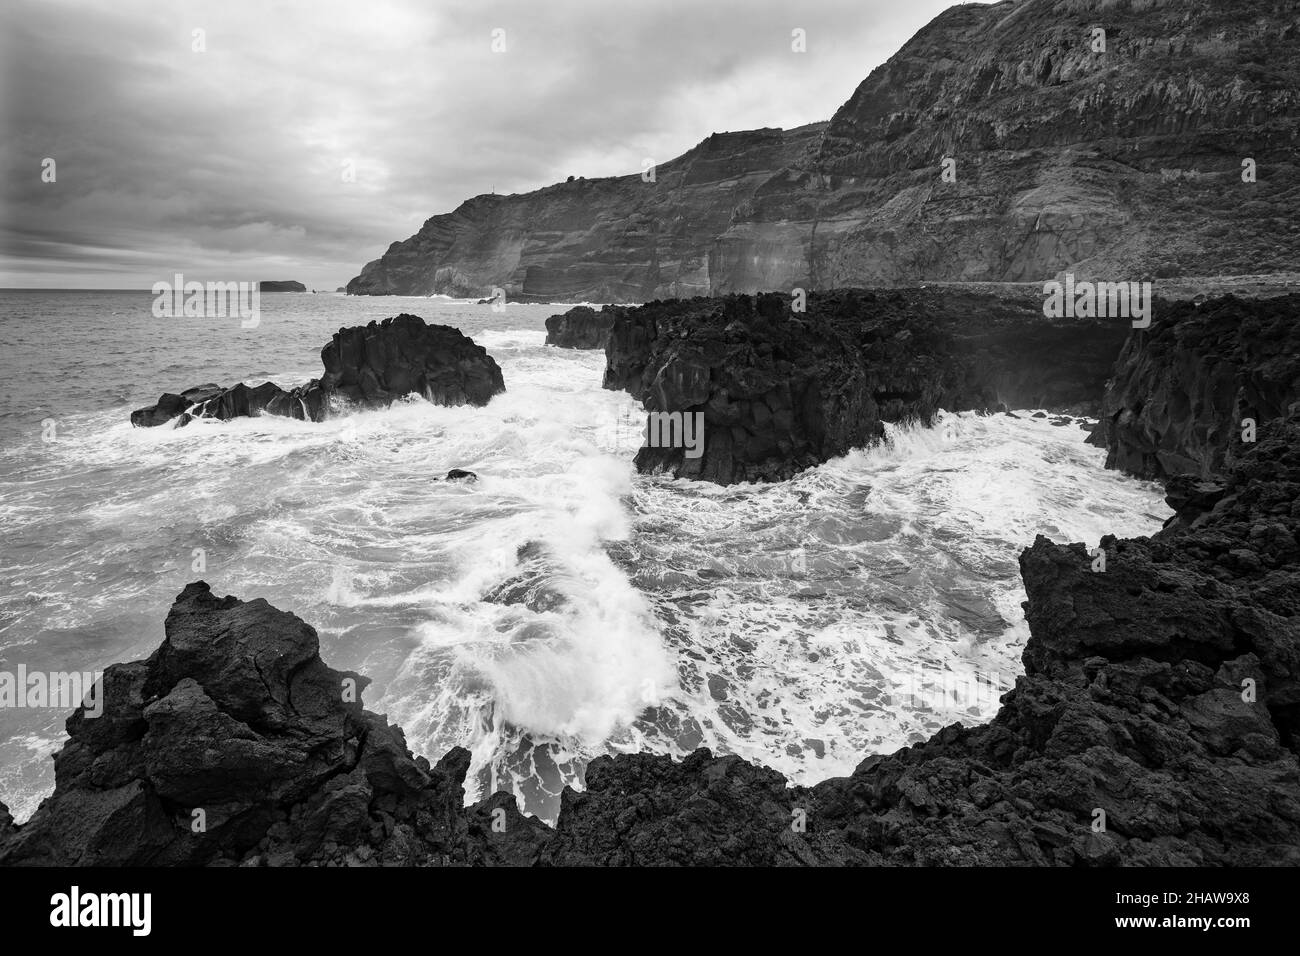 Monohrome, la mer qui fait rage sur la falaise à Ponta da Ferraria, île de Sao Miguel, Açores, Portugal Banque D'Images